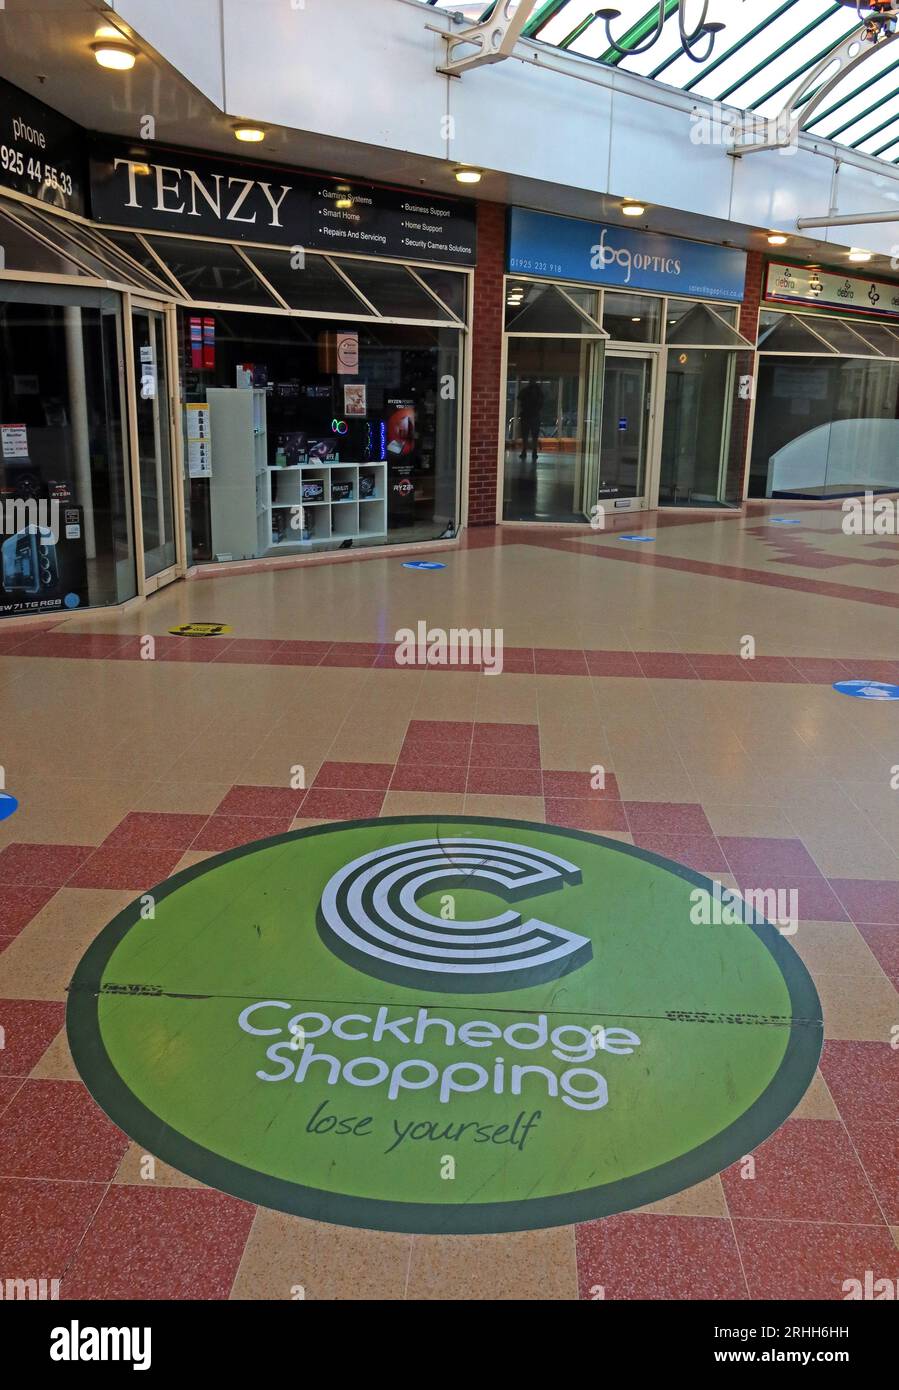 Im Cockhedge Shopping Centre können Sie Lose Yourself, Asda, Tenzy, BGoptics und Einzelhandelsgeschäfte besuchen. Stockfoto